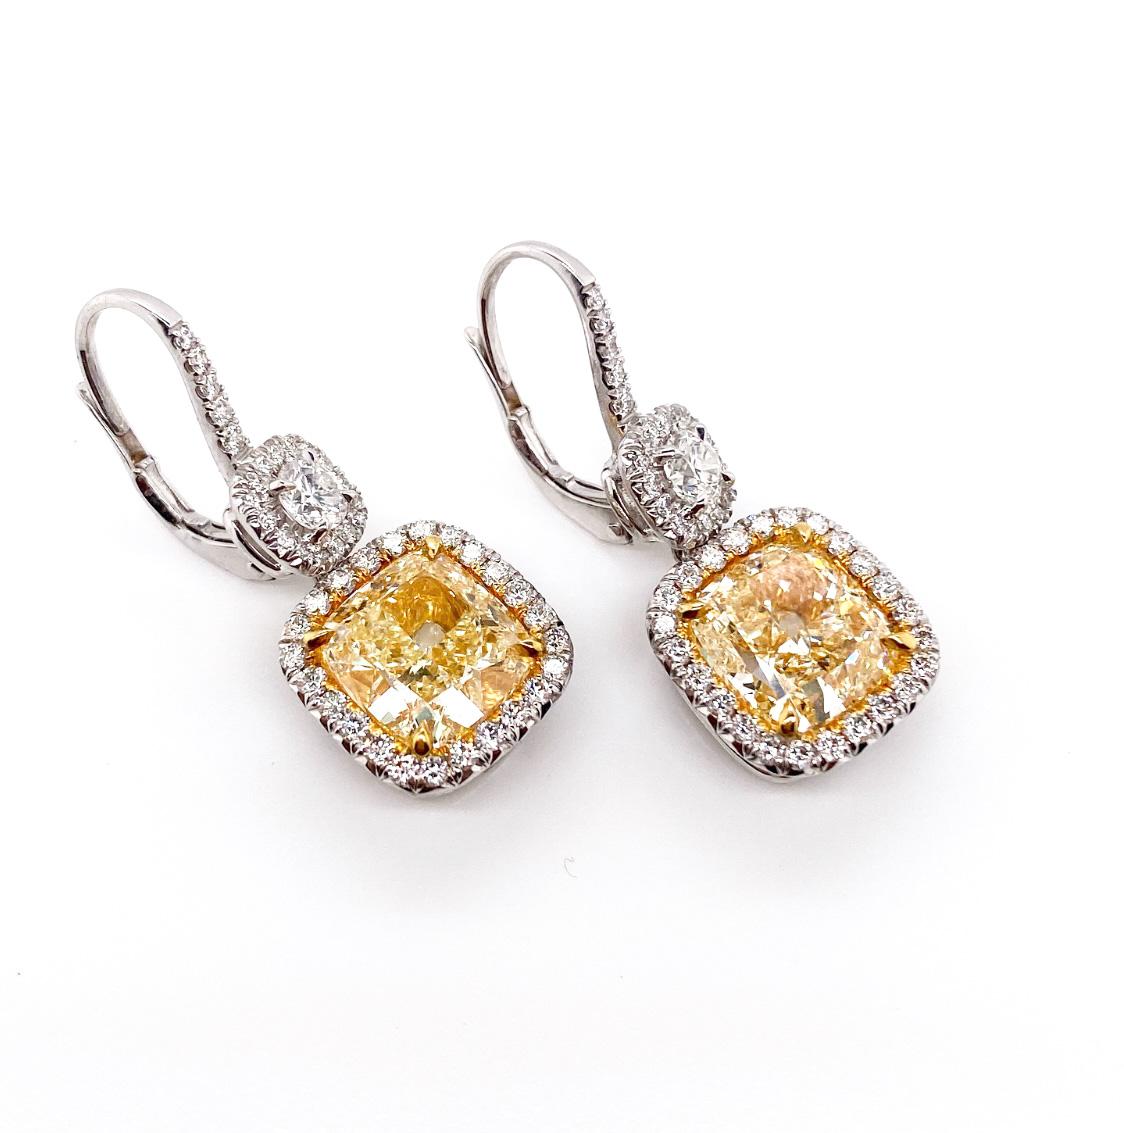 Setzen Sie ein glamouröses Statement mit diesen zeitlos eleganten Ohrhängern. Die sehr schönen GIA-zertifizierten gelben Kissen Diamanten perfekt mit den funkelnden weißen Diamanten umrahmt. Zusätzlich ist ein rundes Brillantpaar von 0,48 Karat,